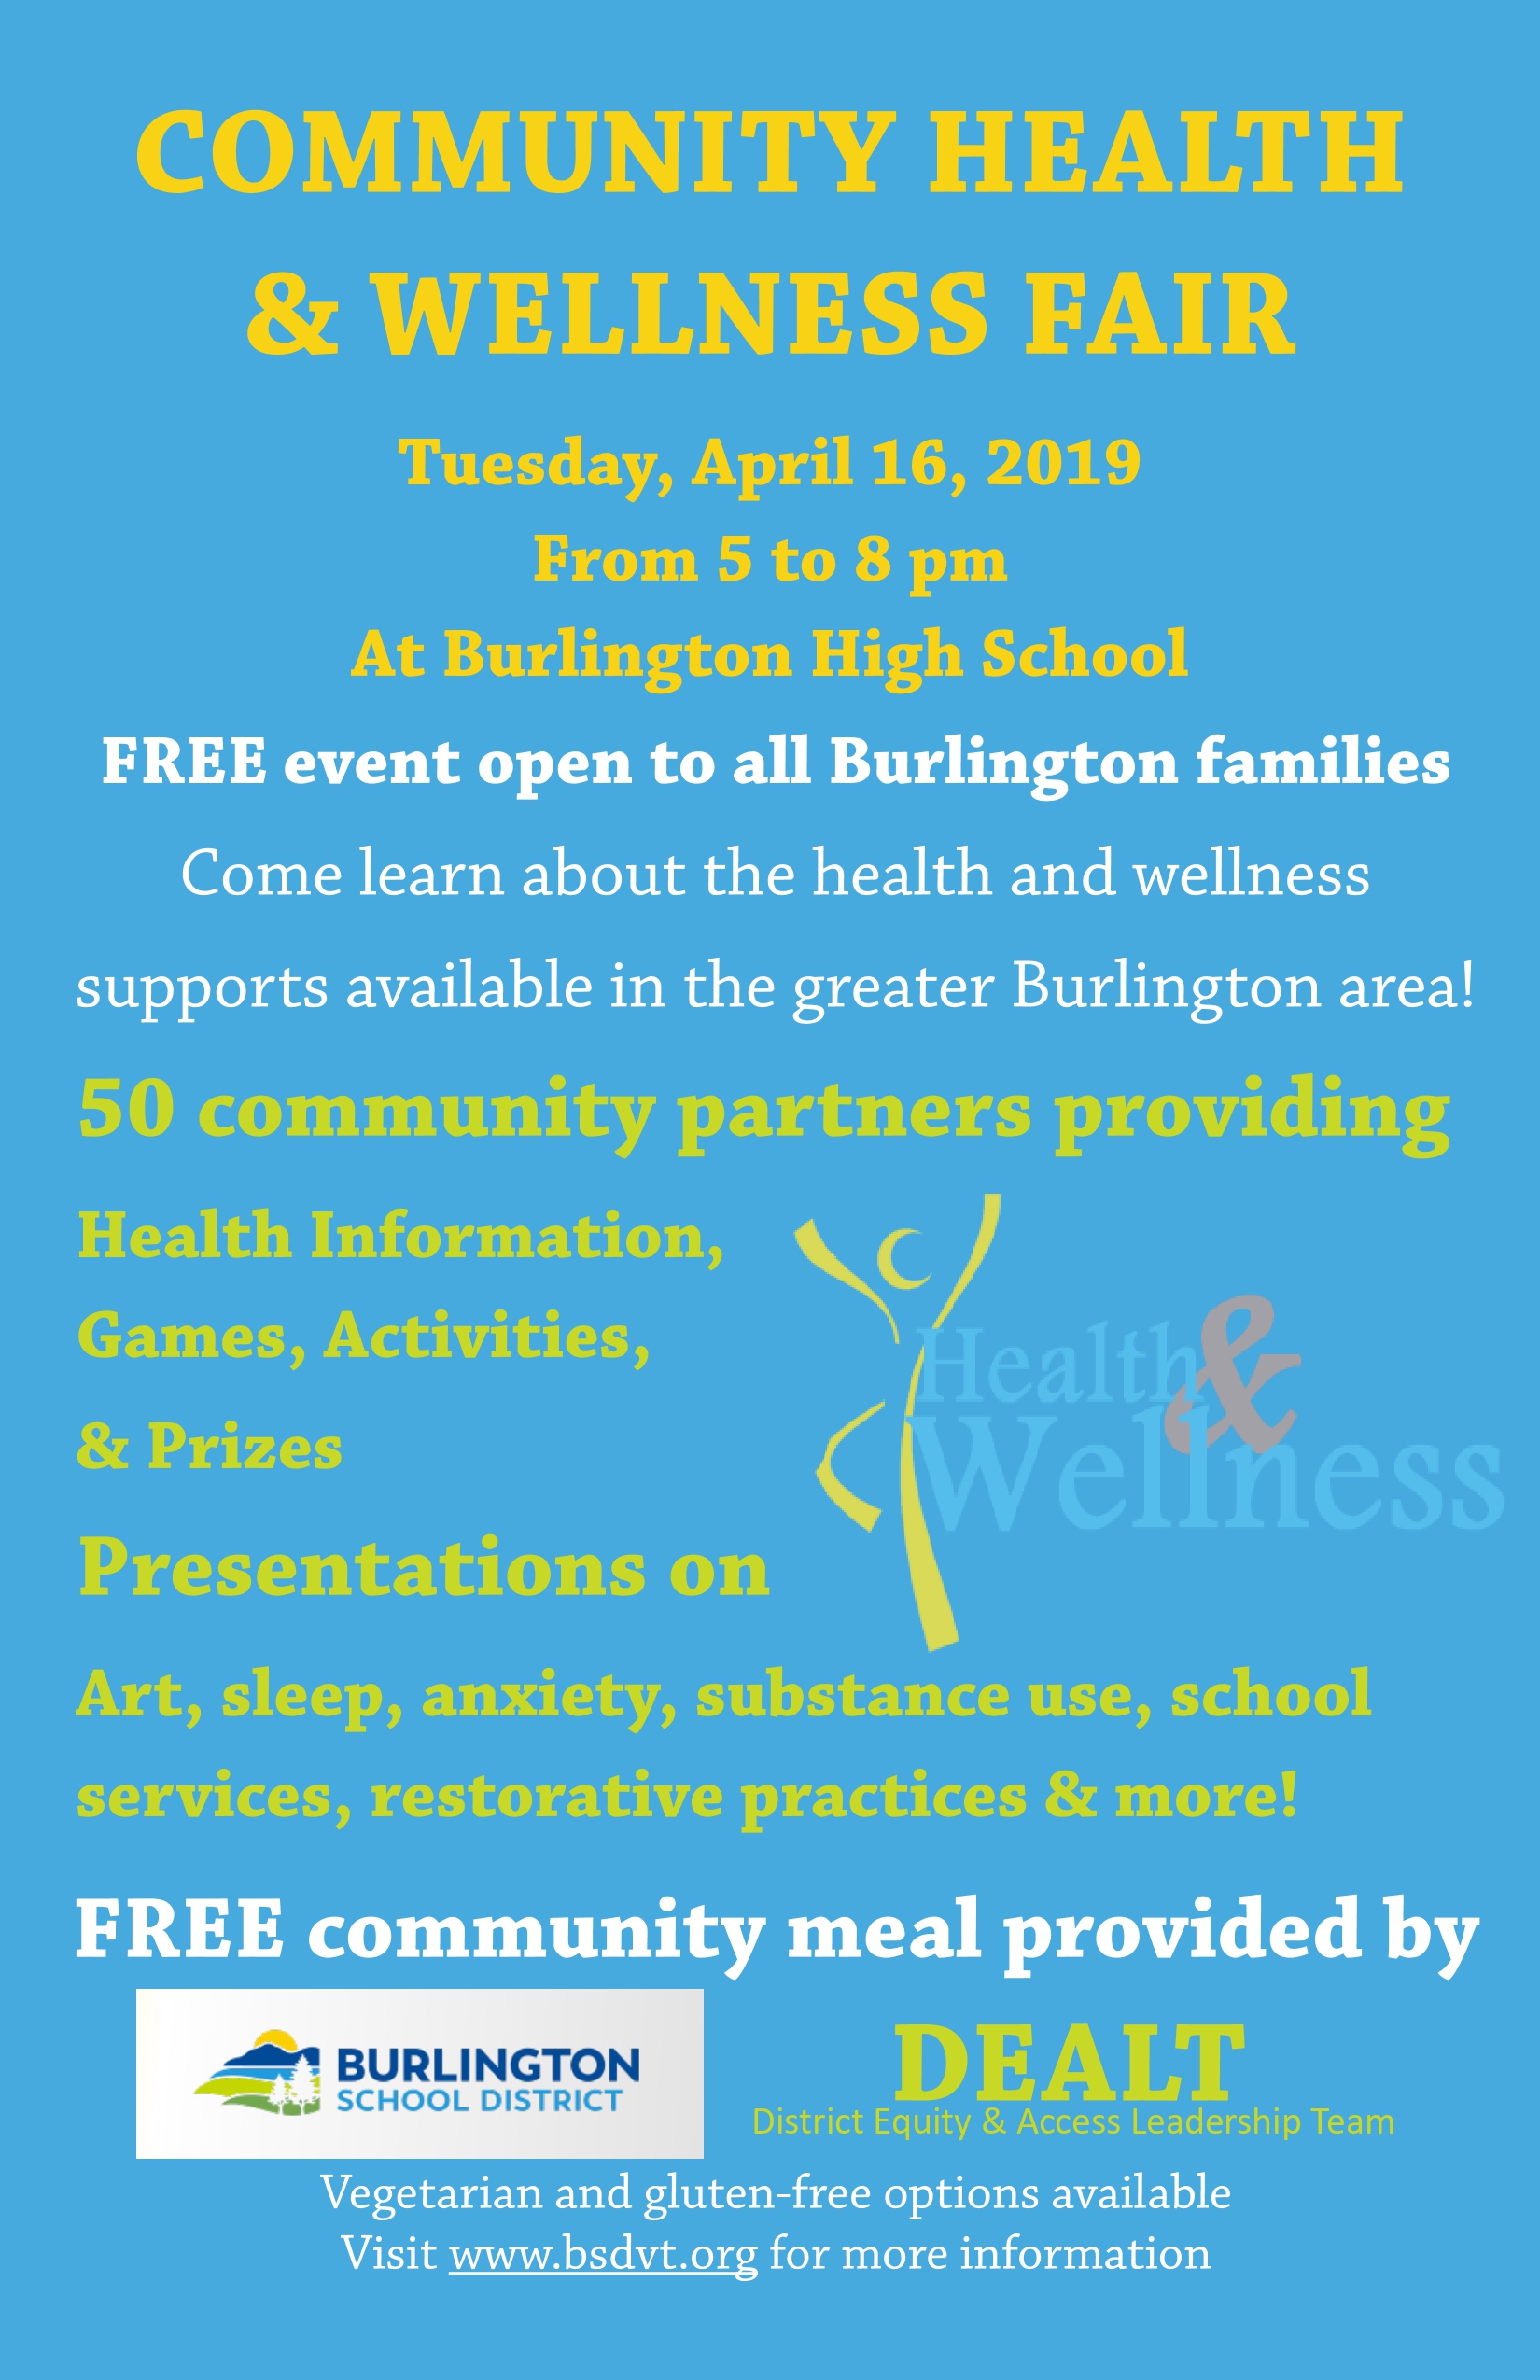 BSD Community Health and Wellness Fair April 16